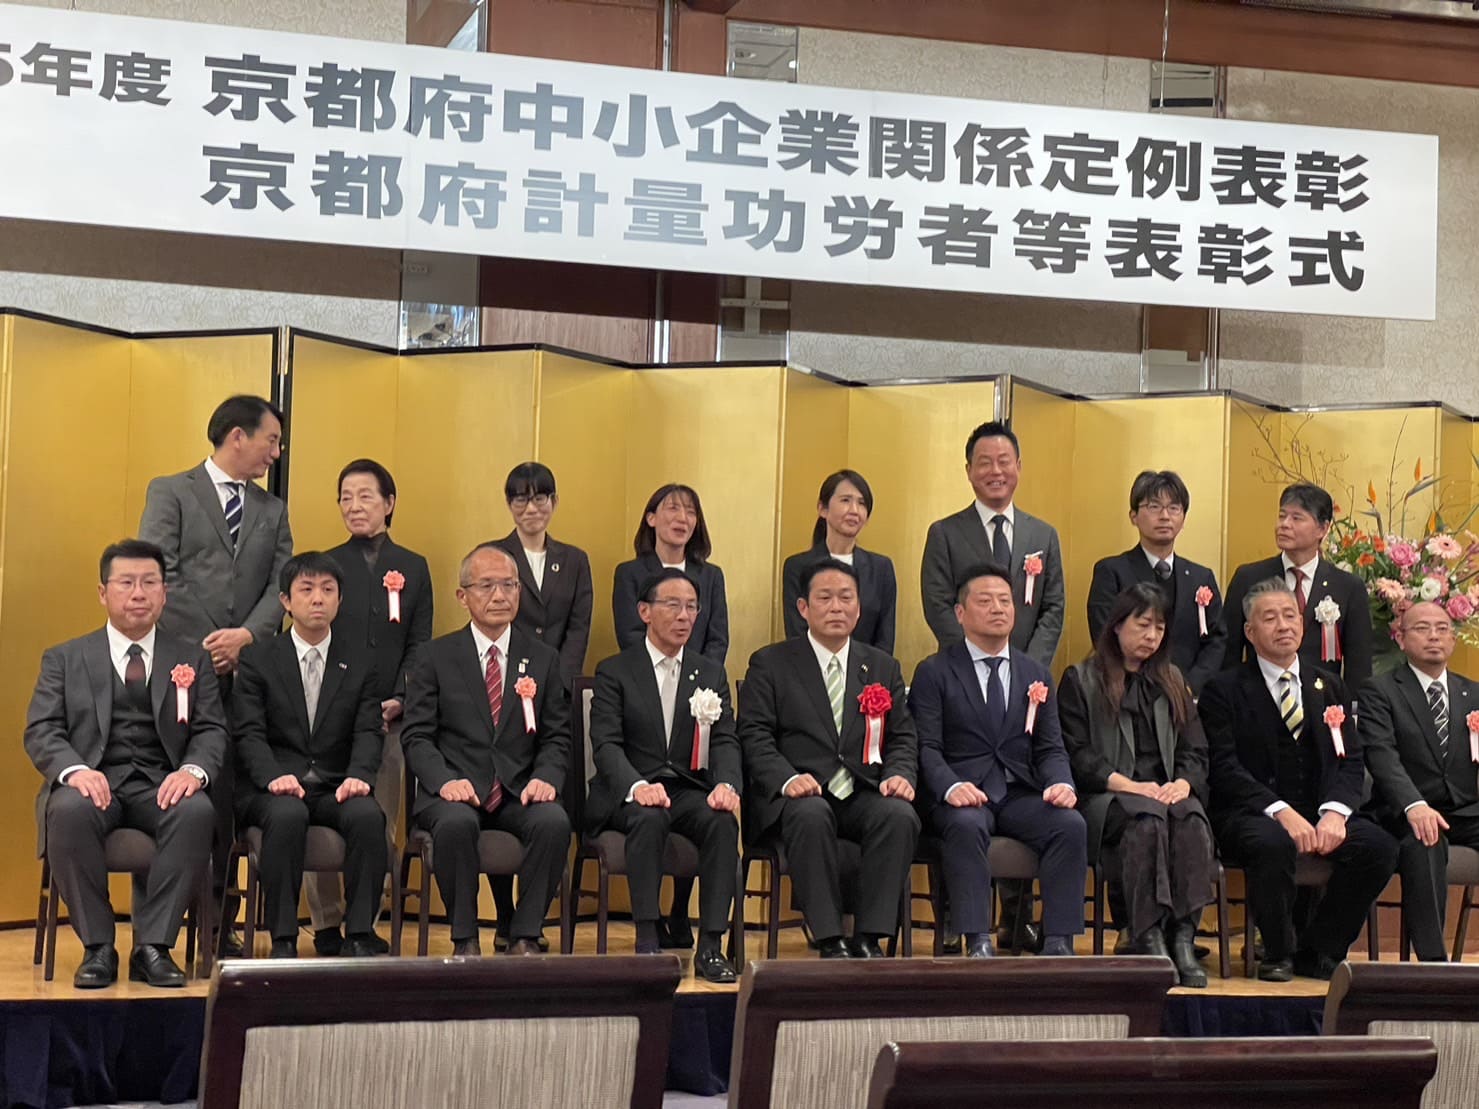 弊社の社員2名が京都府知事表彰を受けました。